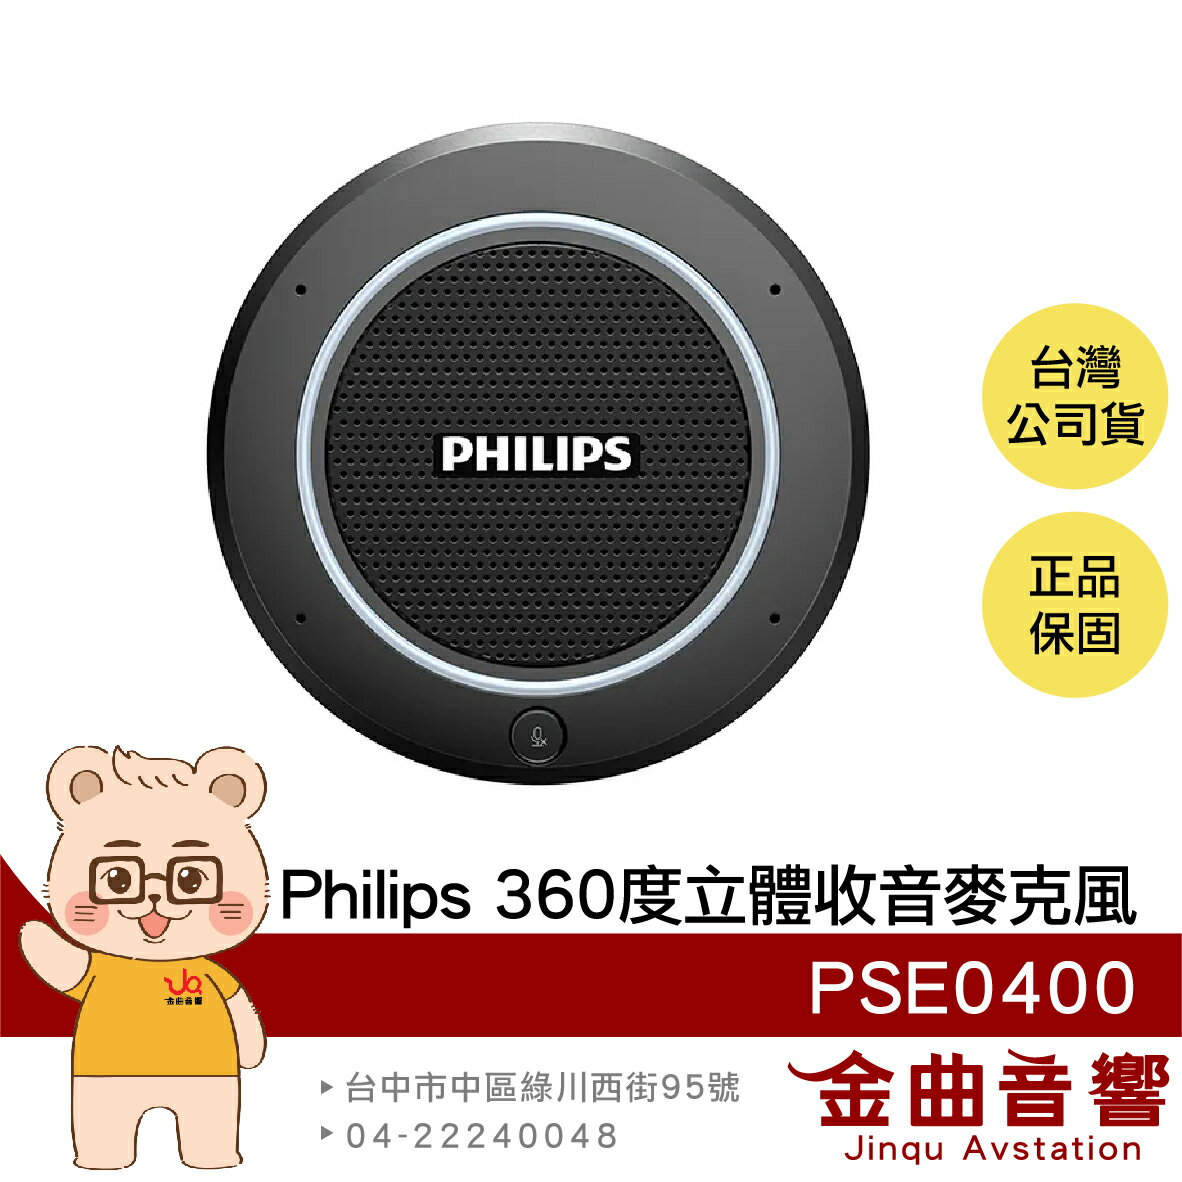 Philips PSE0400 回音消除 360°收音 隨插即用 立體收音 會議麥克風 | 金曲音響